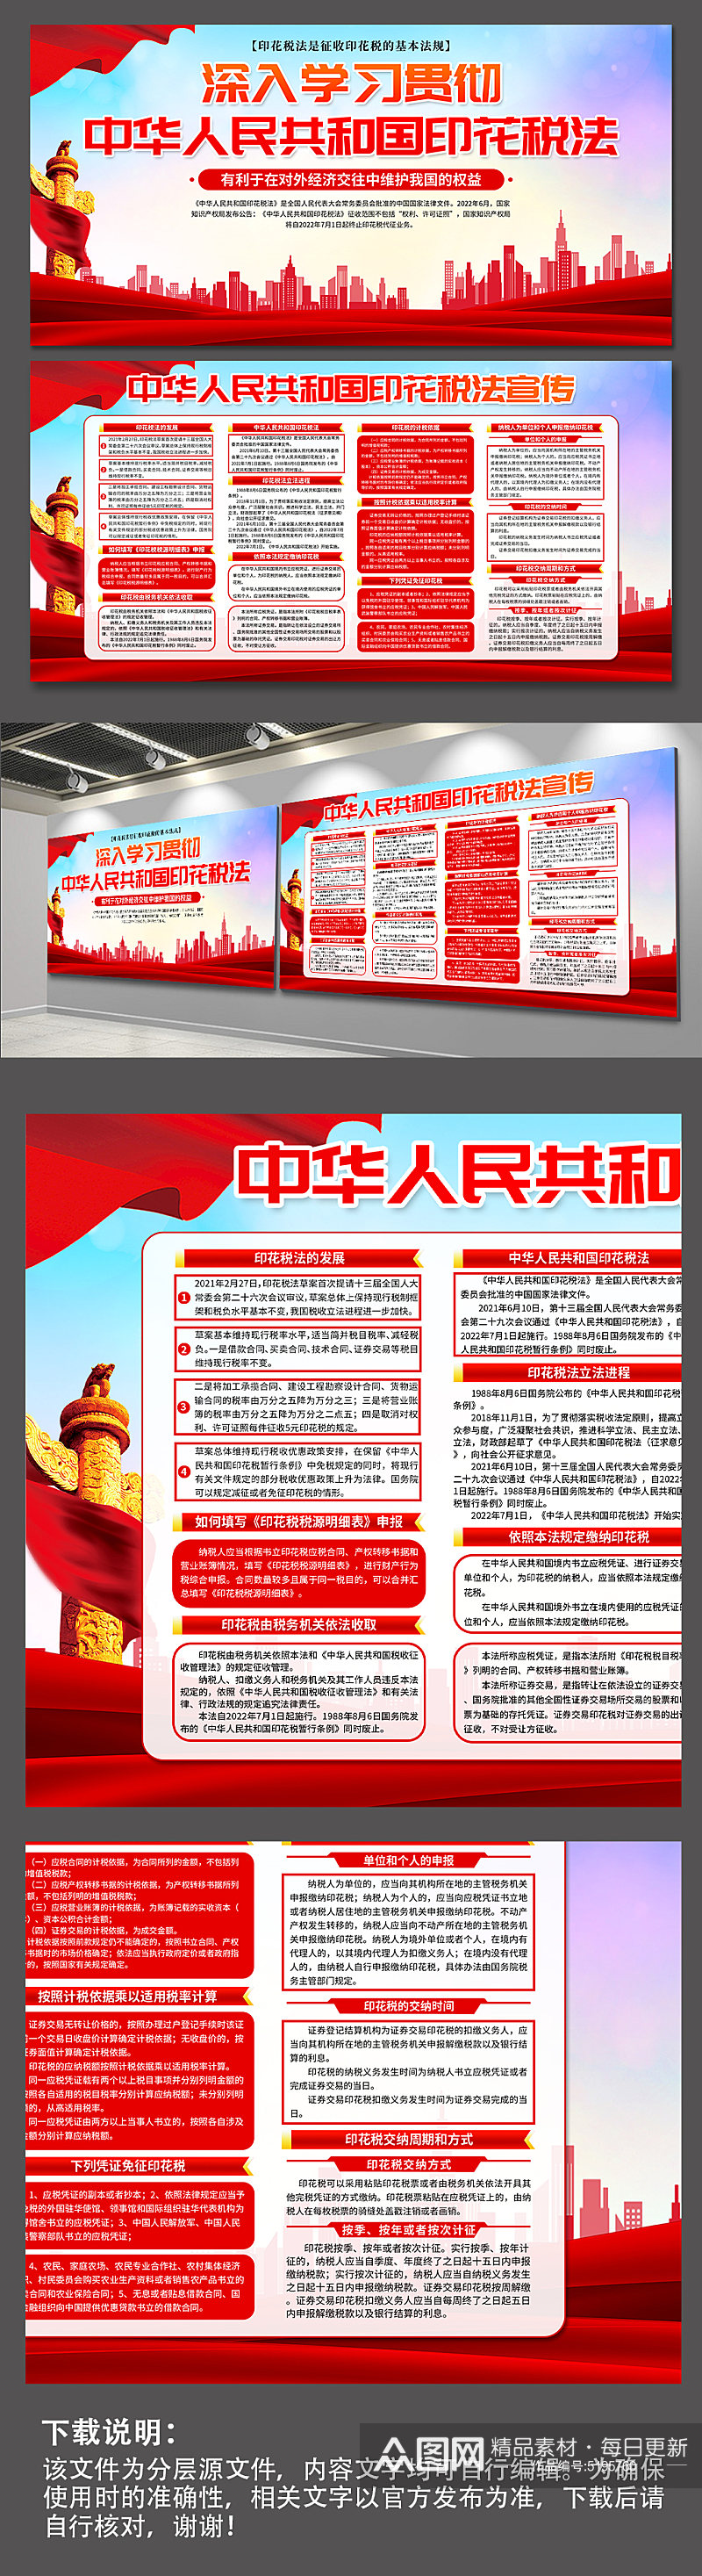 蓝色中华人民共和国印花税法党建展板素材